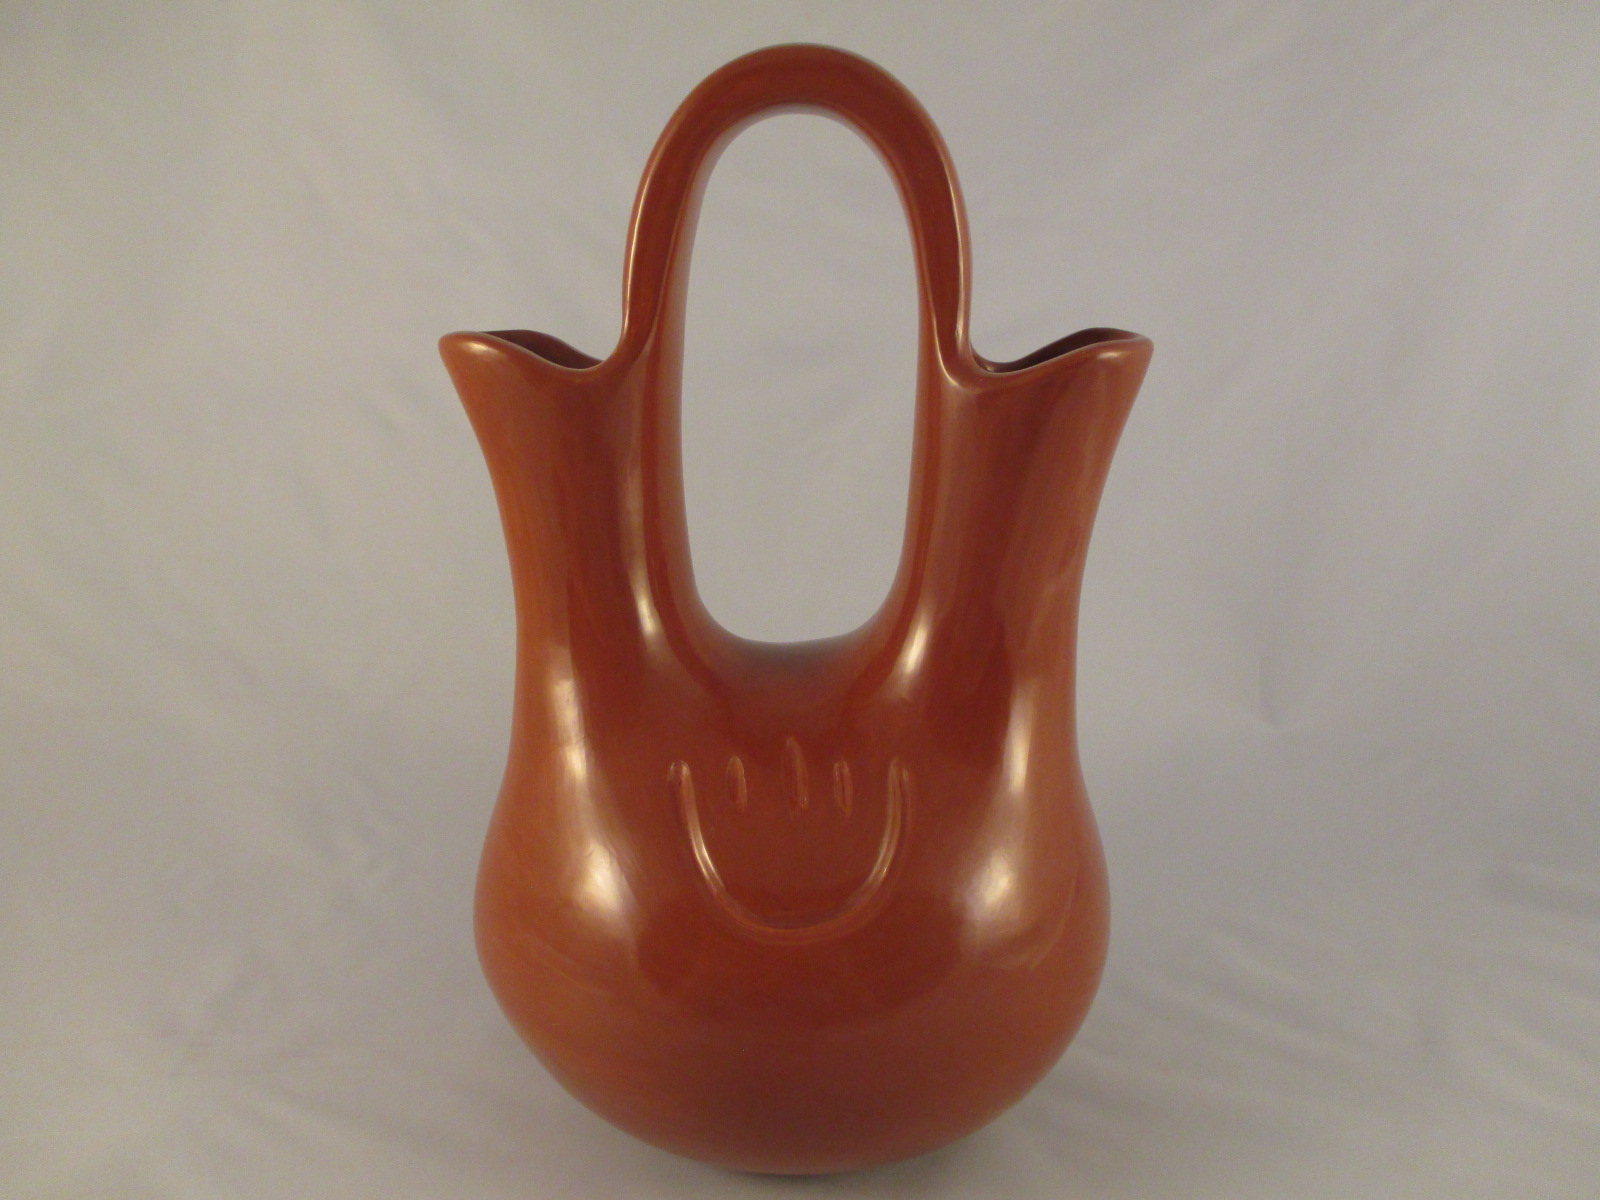 Wedding Vase - Red Santa Clara Wedding Vase Pottery by Jason Ebelacker $2,600-